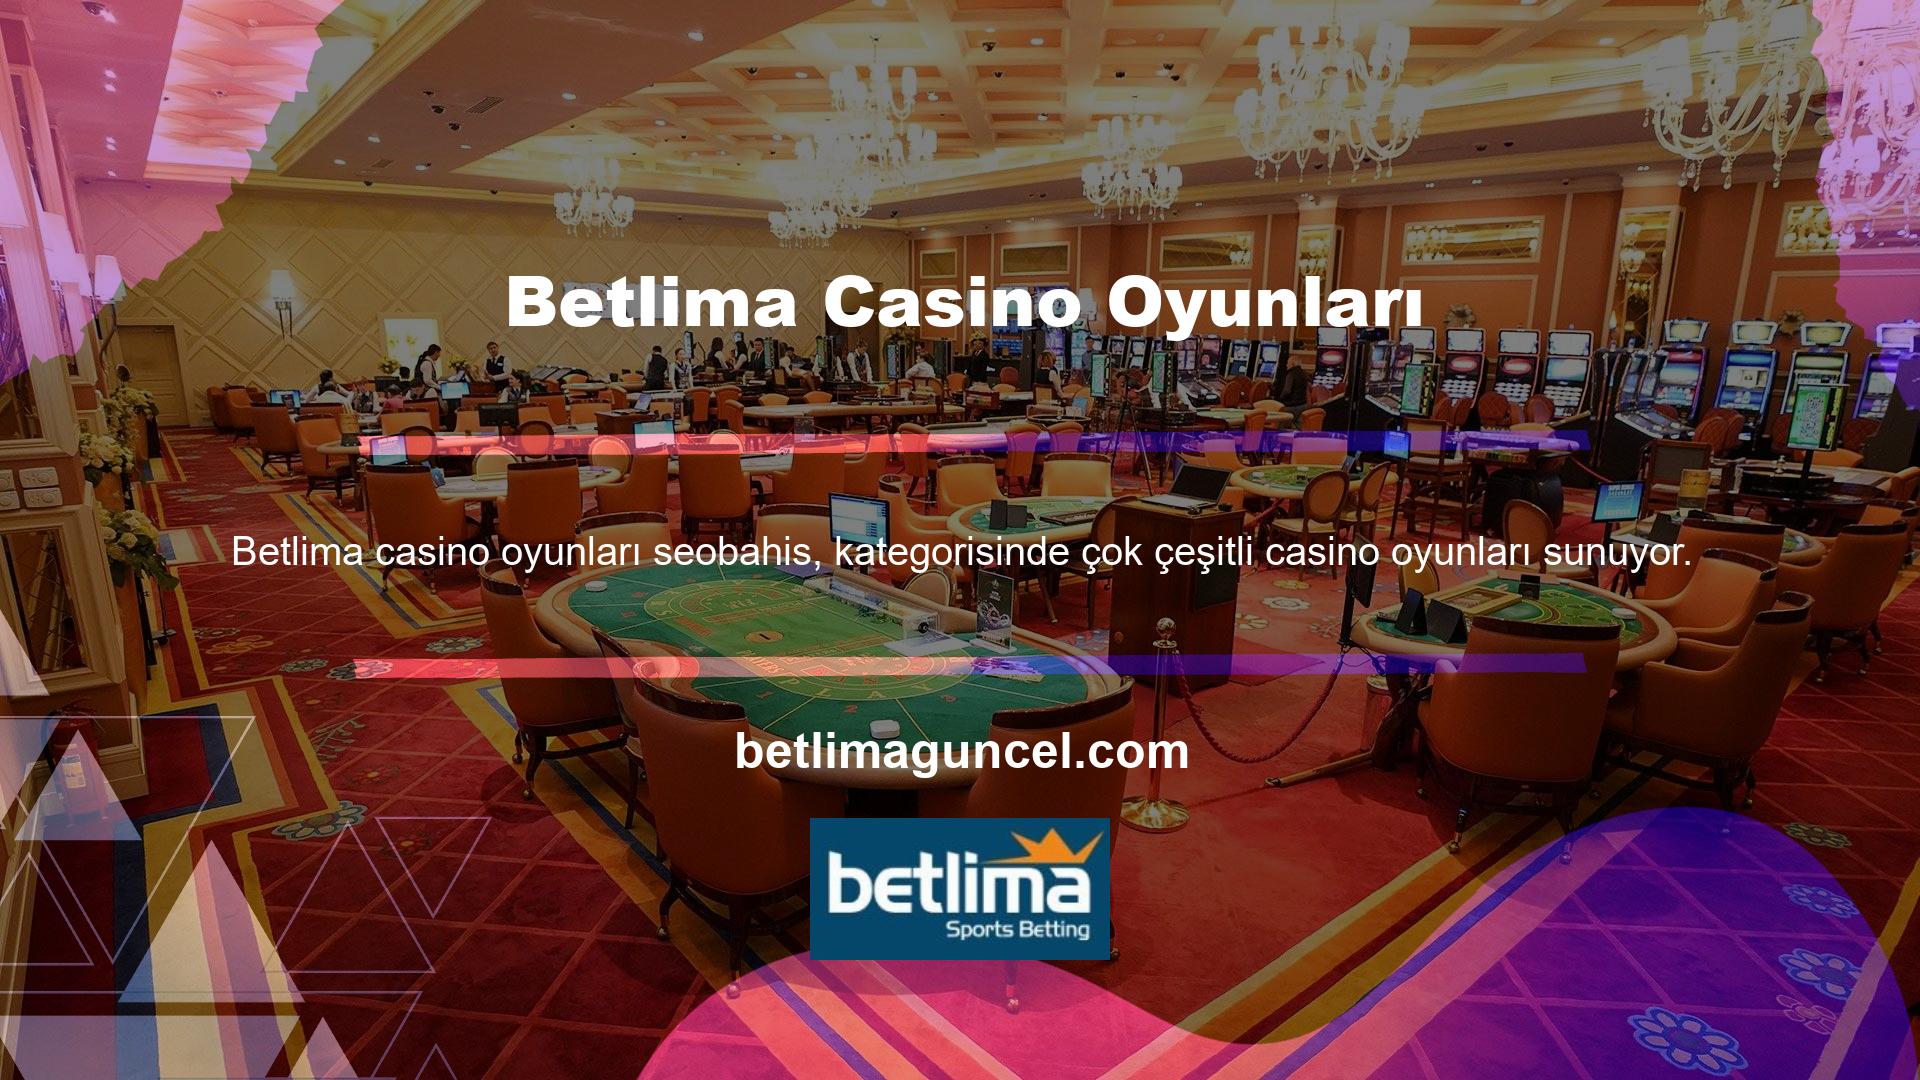 Sitede yer alan casino oyunlarına katılmak için öncelikle üye olmanız gerekmektedir